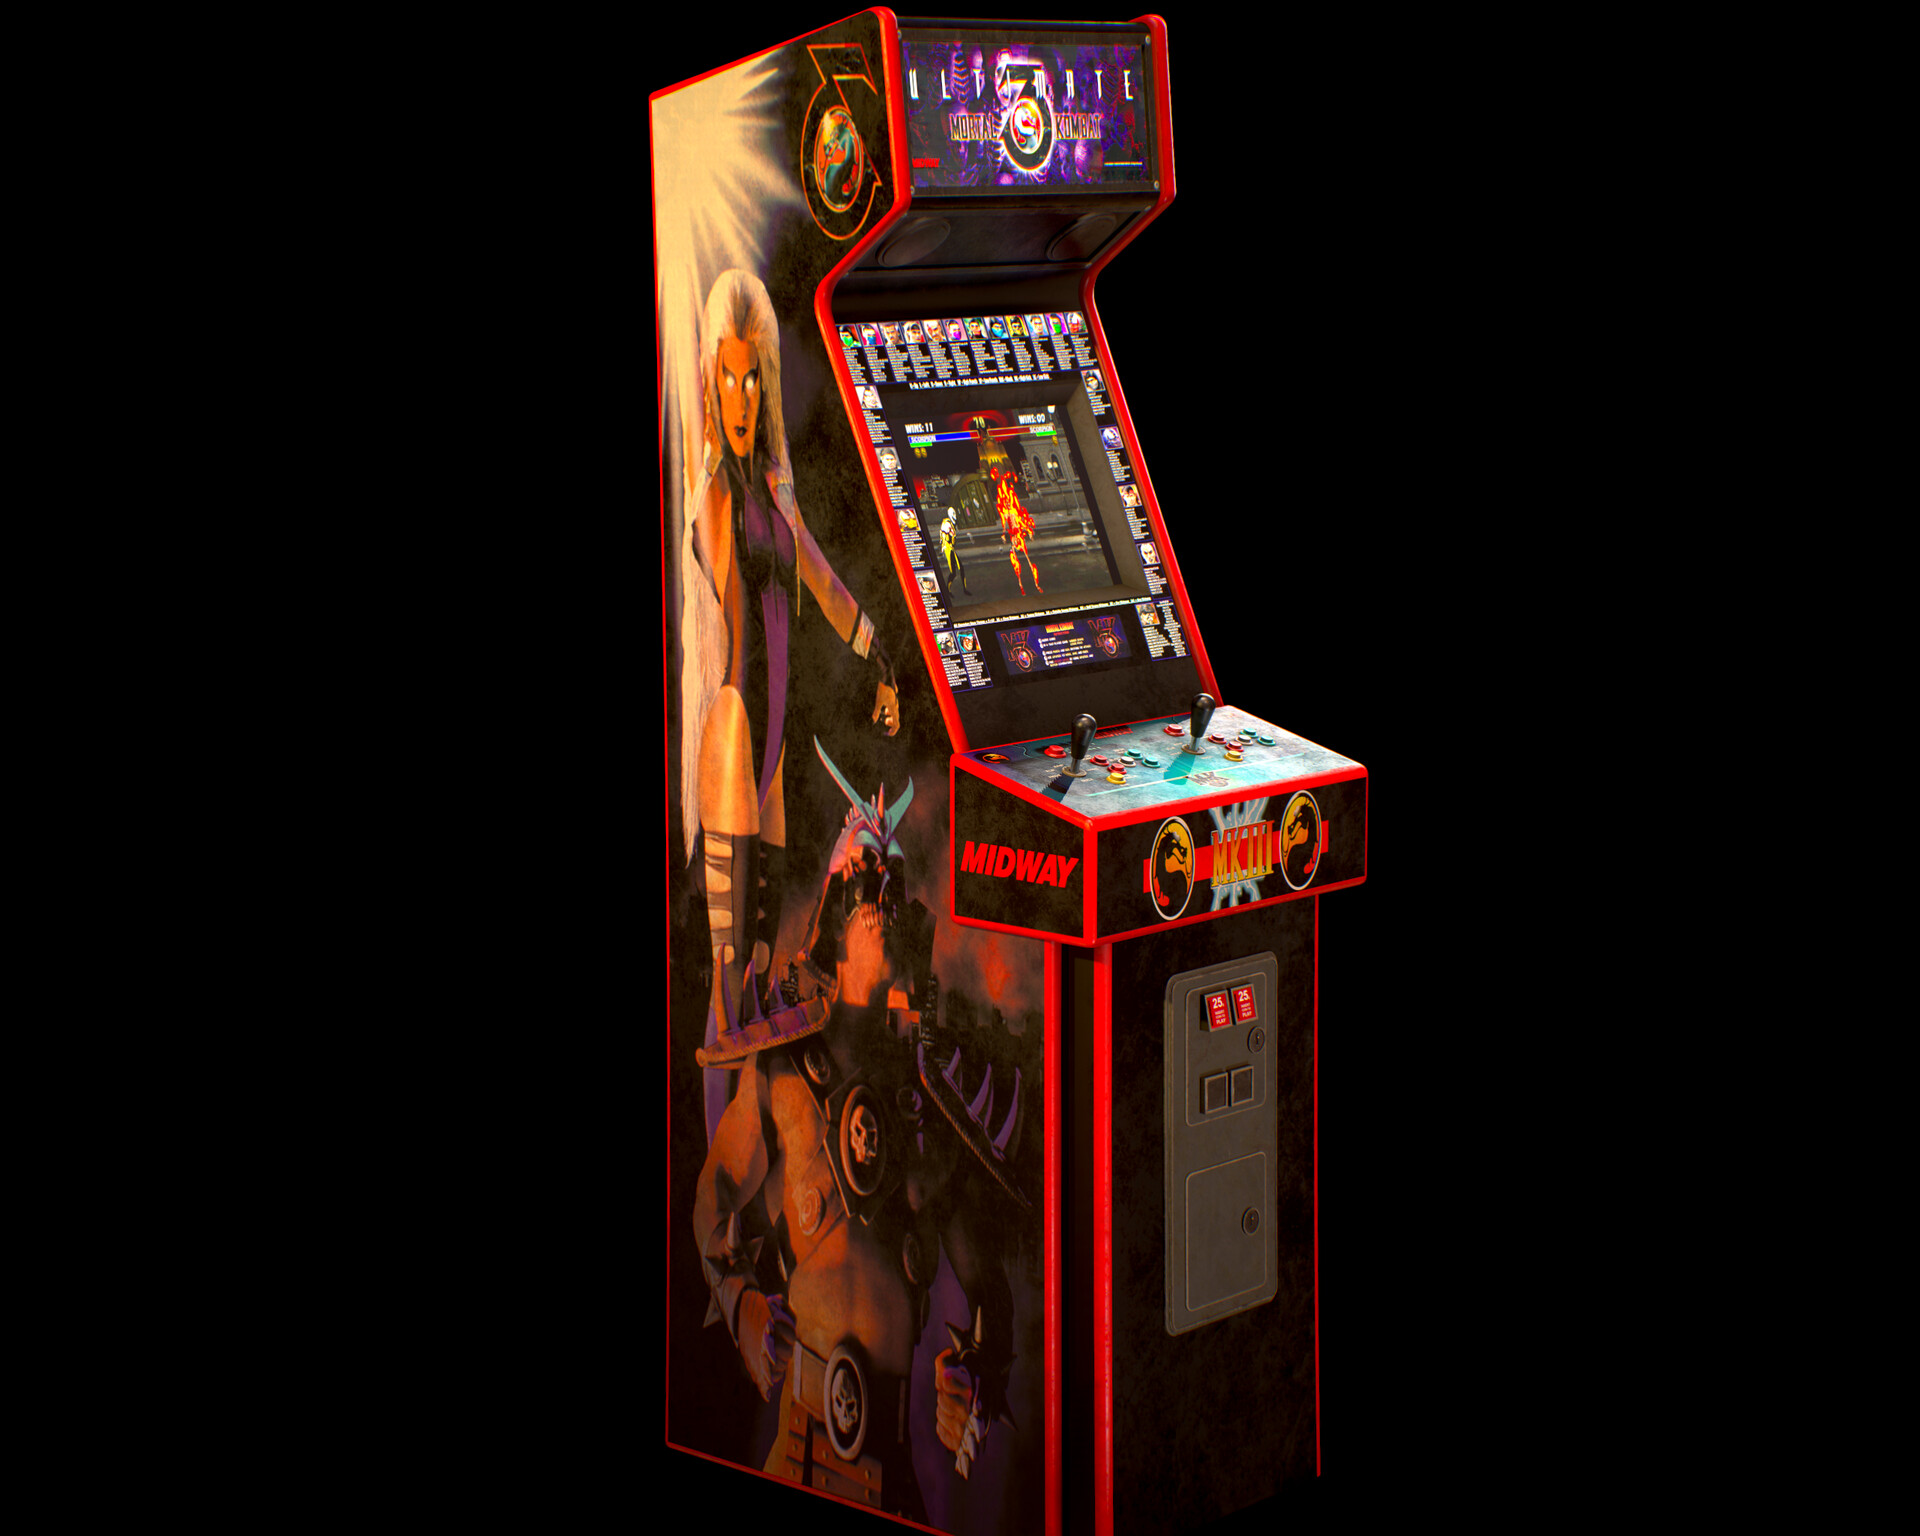 Secret agent игровой автомат порно видеочат онлайн рулетка